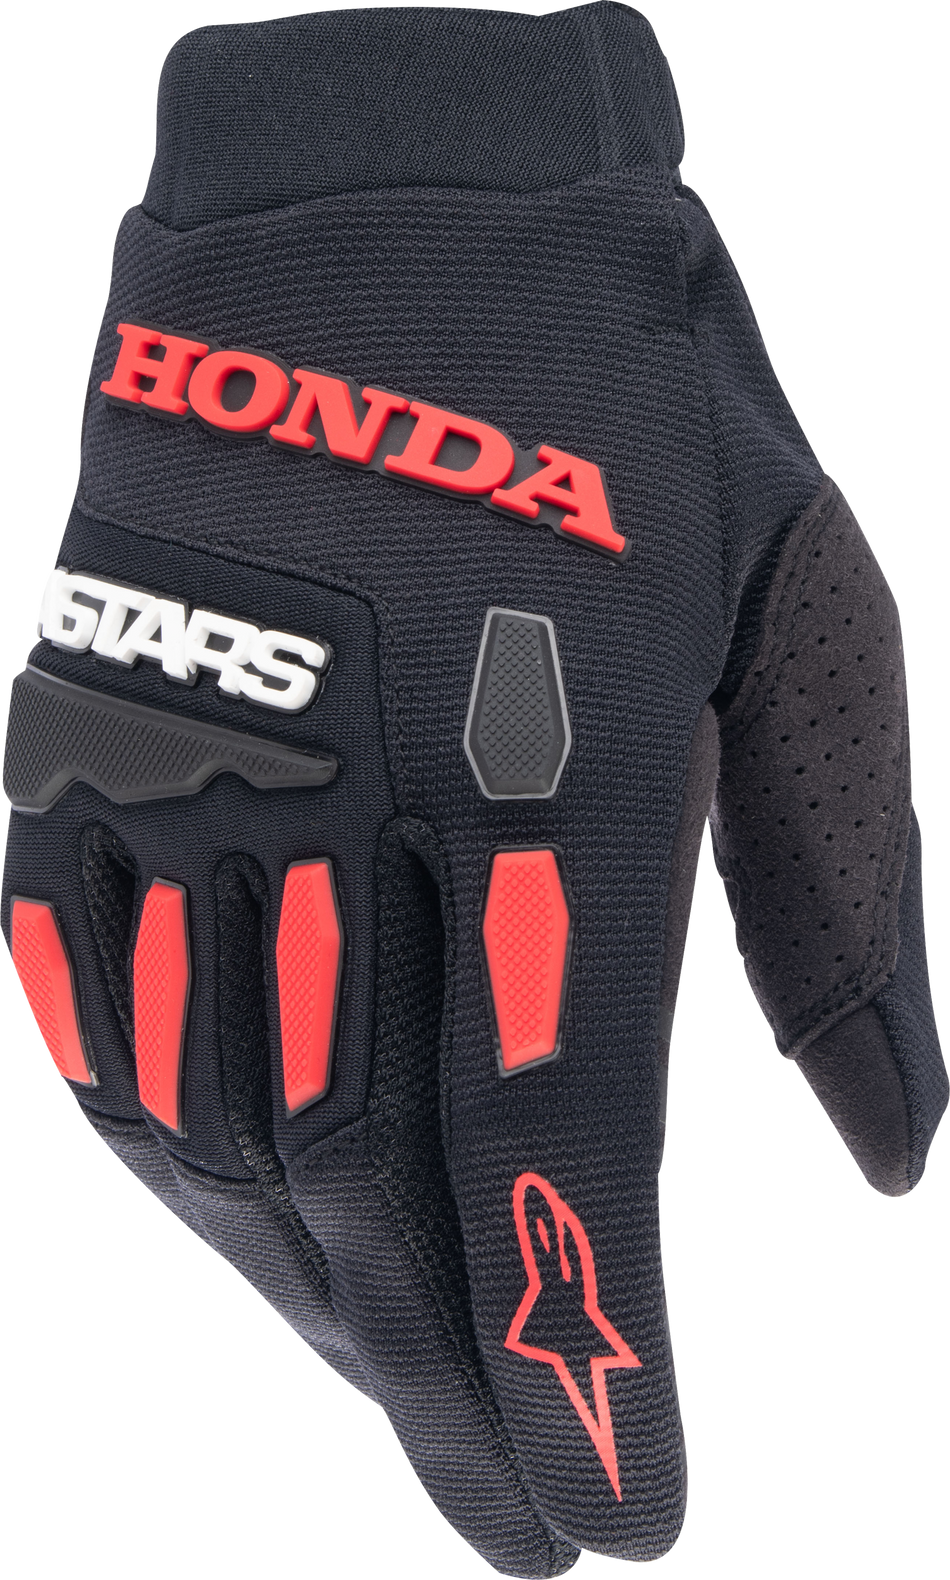 ALPINESTARS Honda Full Bore Gloves Black/Bright Red Sm 3563823-1303-S